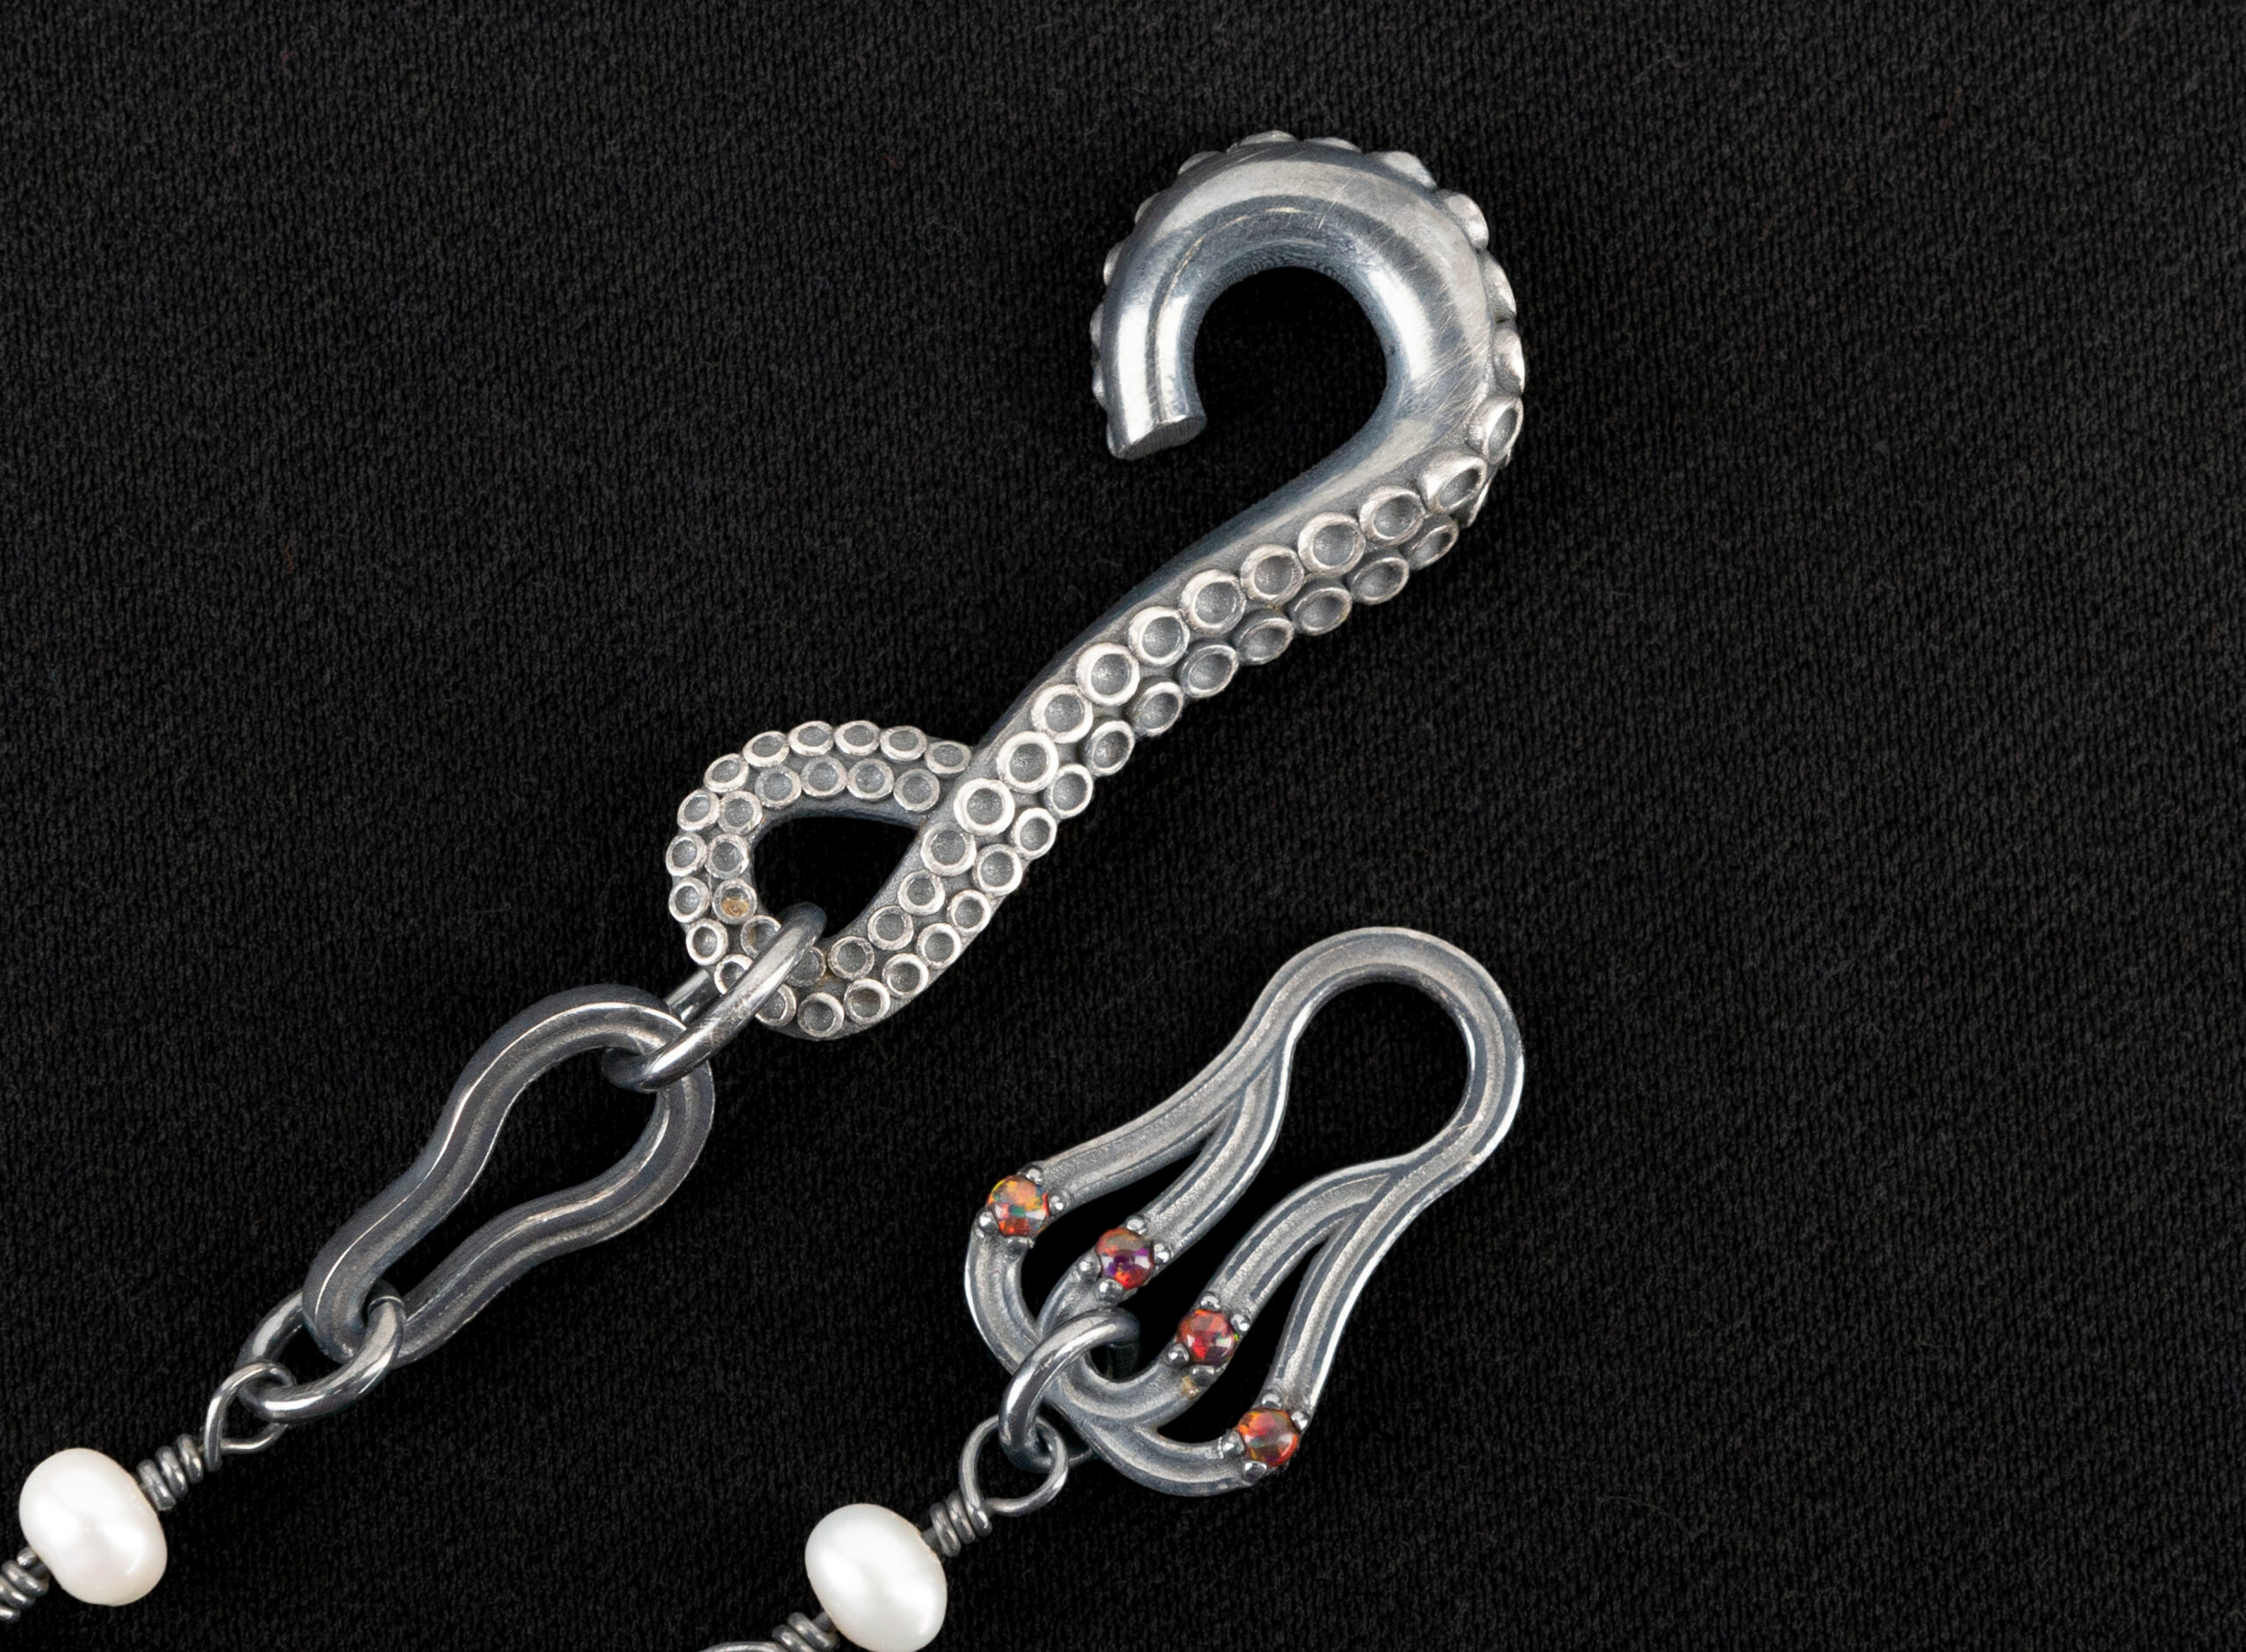 Necklaces lock